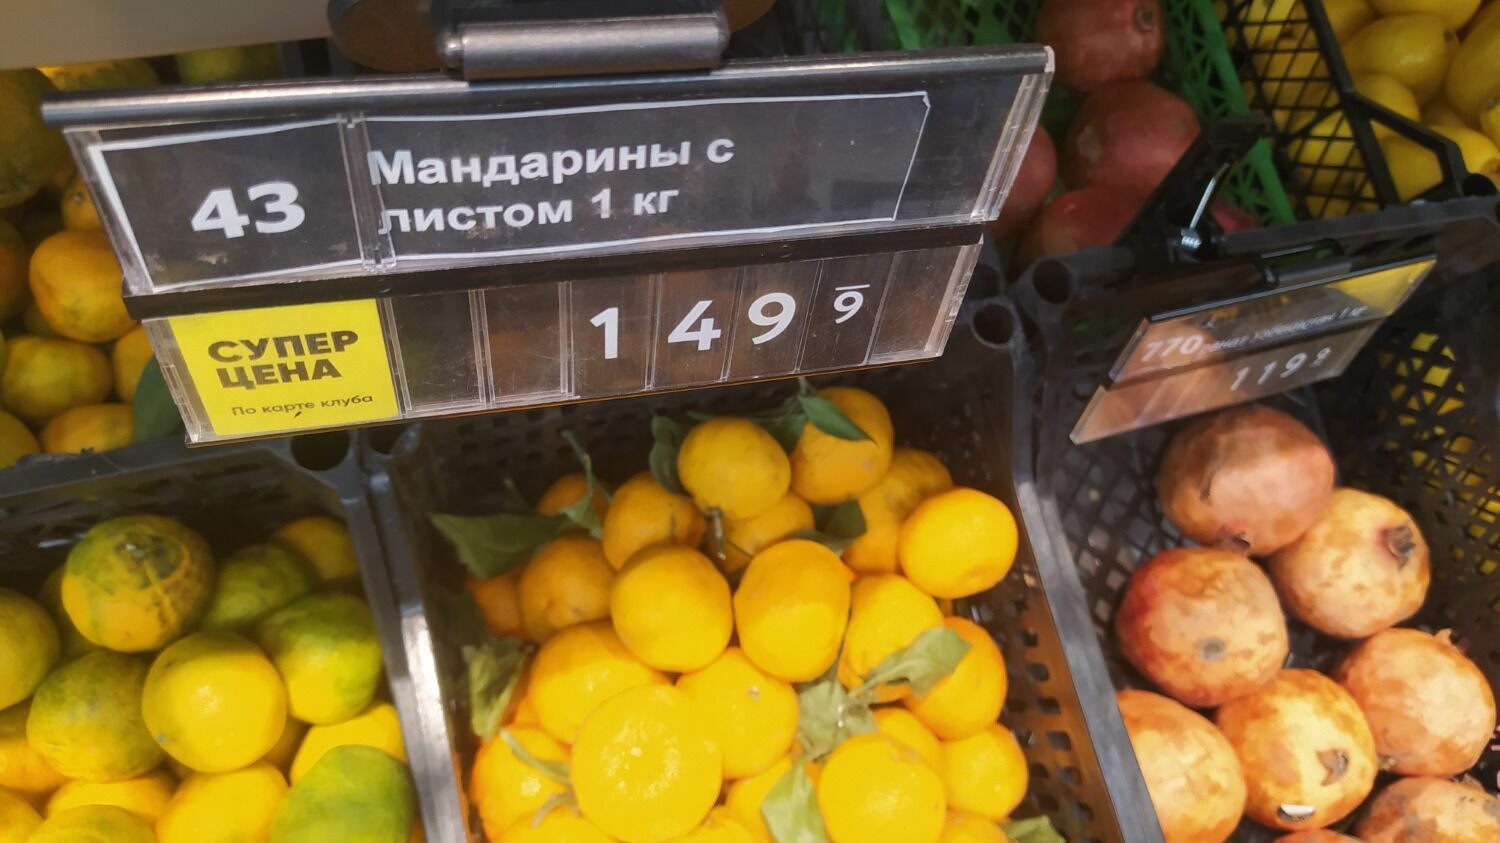 «Мандарины с листочком» в волгоградском «Перекрестке» стоят почти 150 руб. за 1 кг